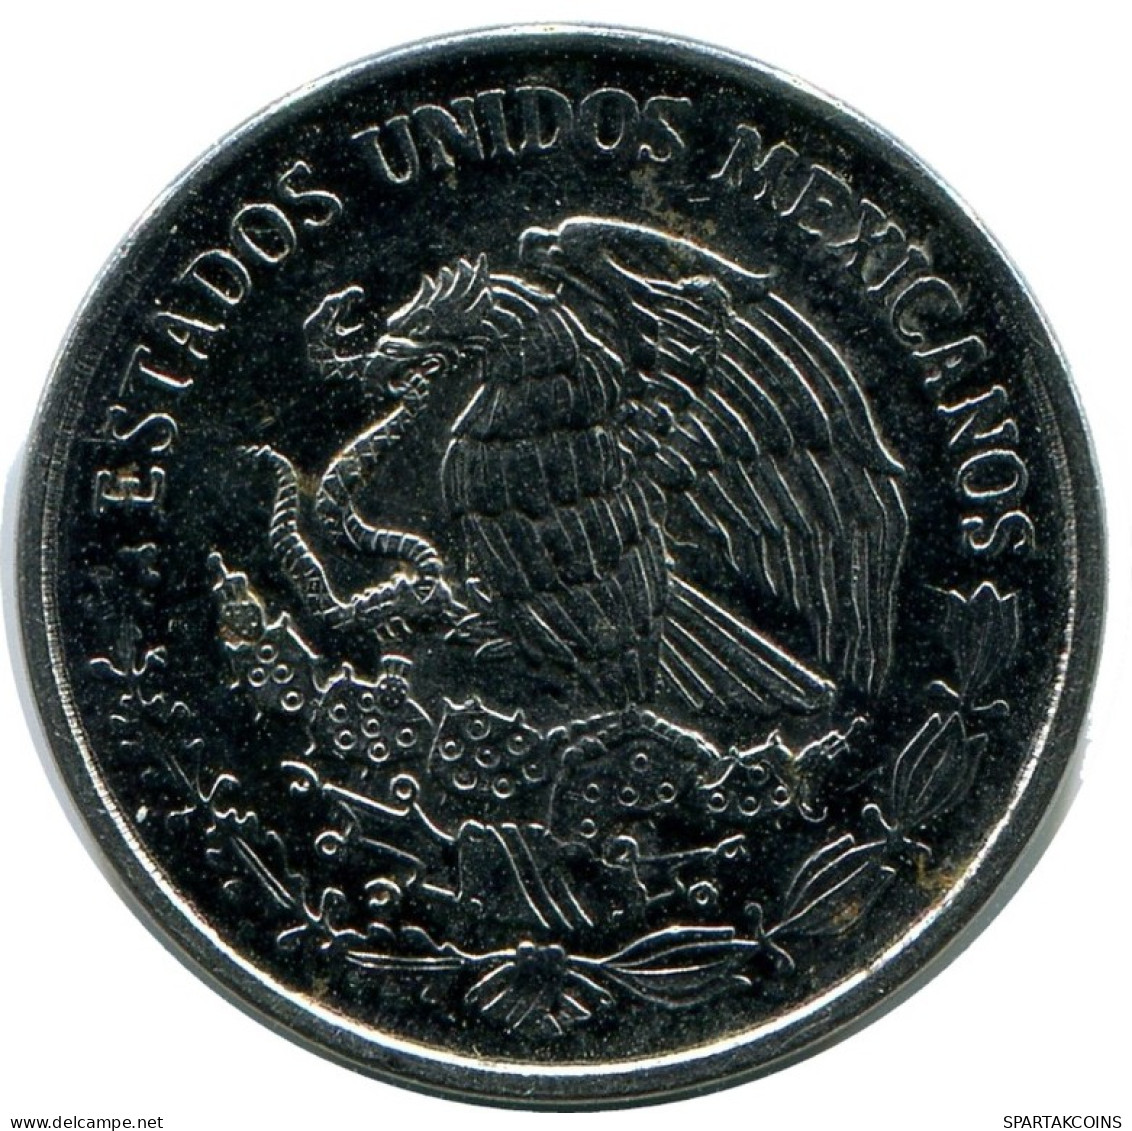 10 CENTAVOS 2002 MEXICO Coin #AH414.5.U.A - Mexico